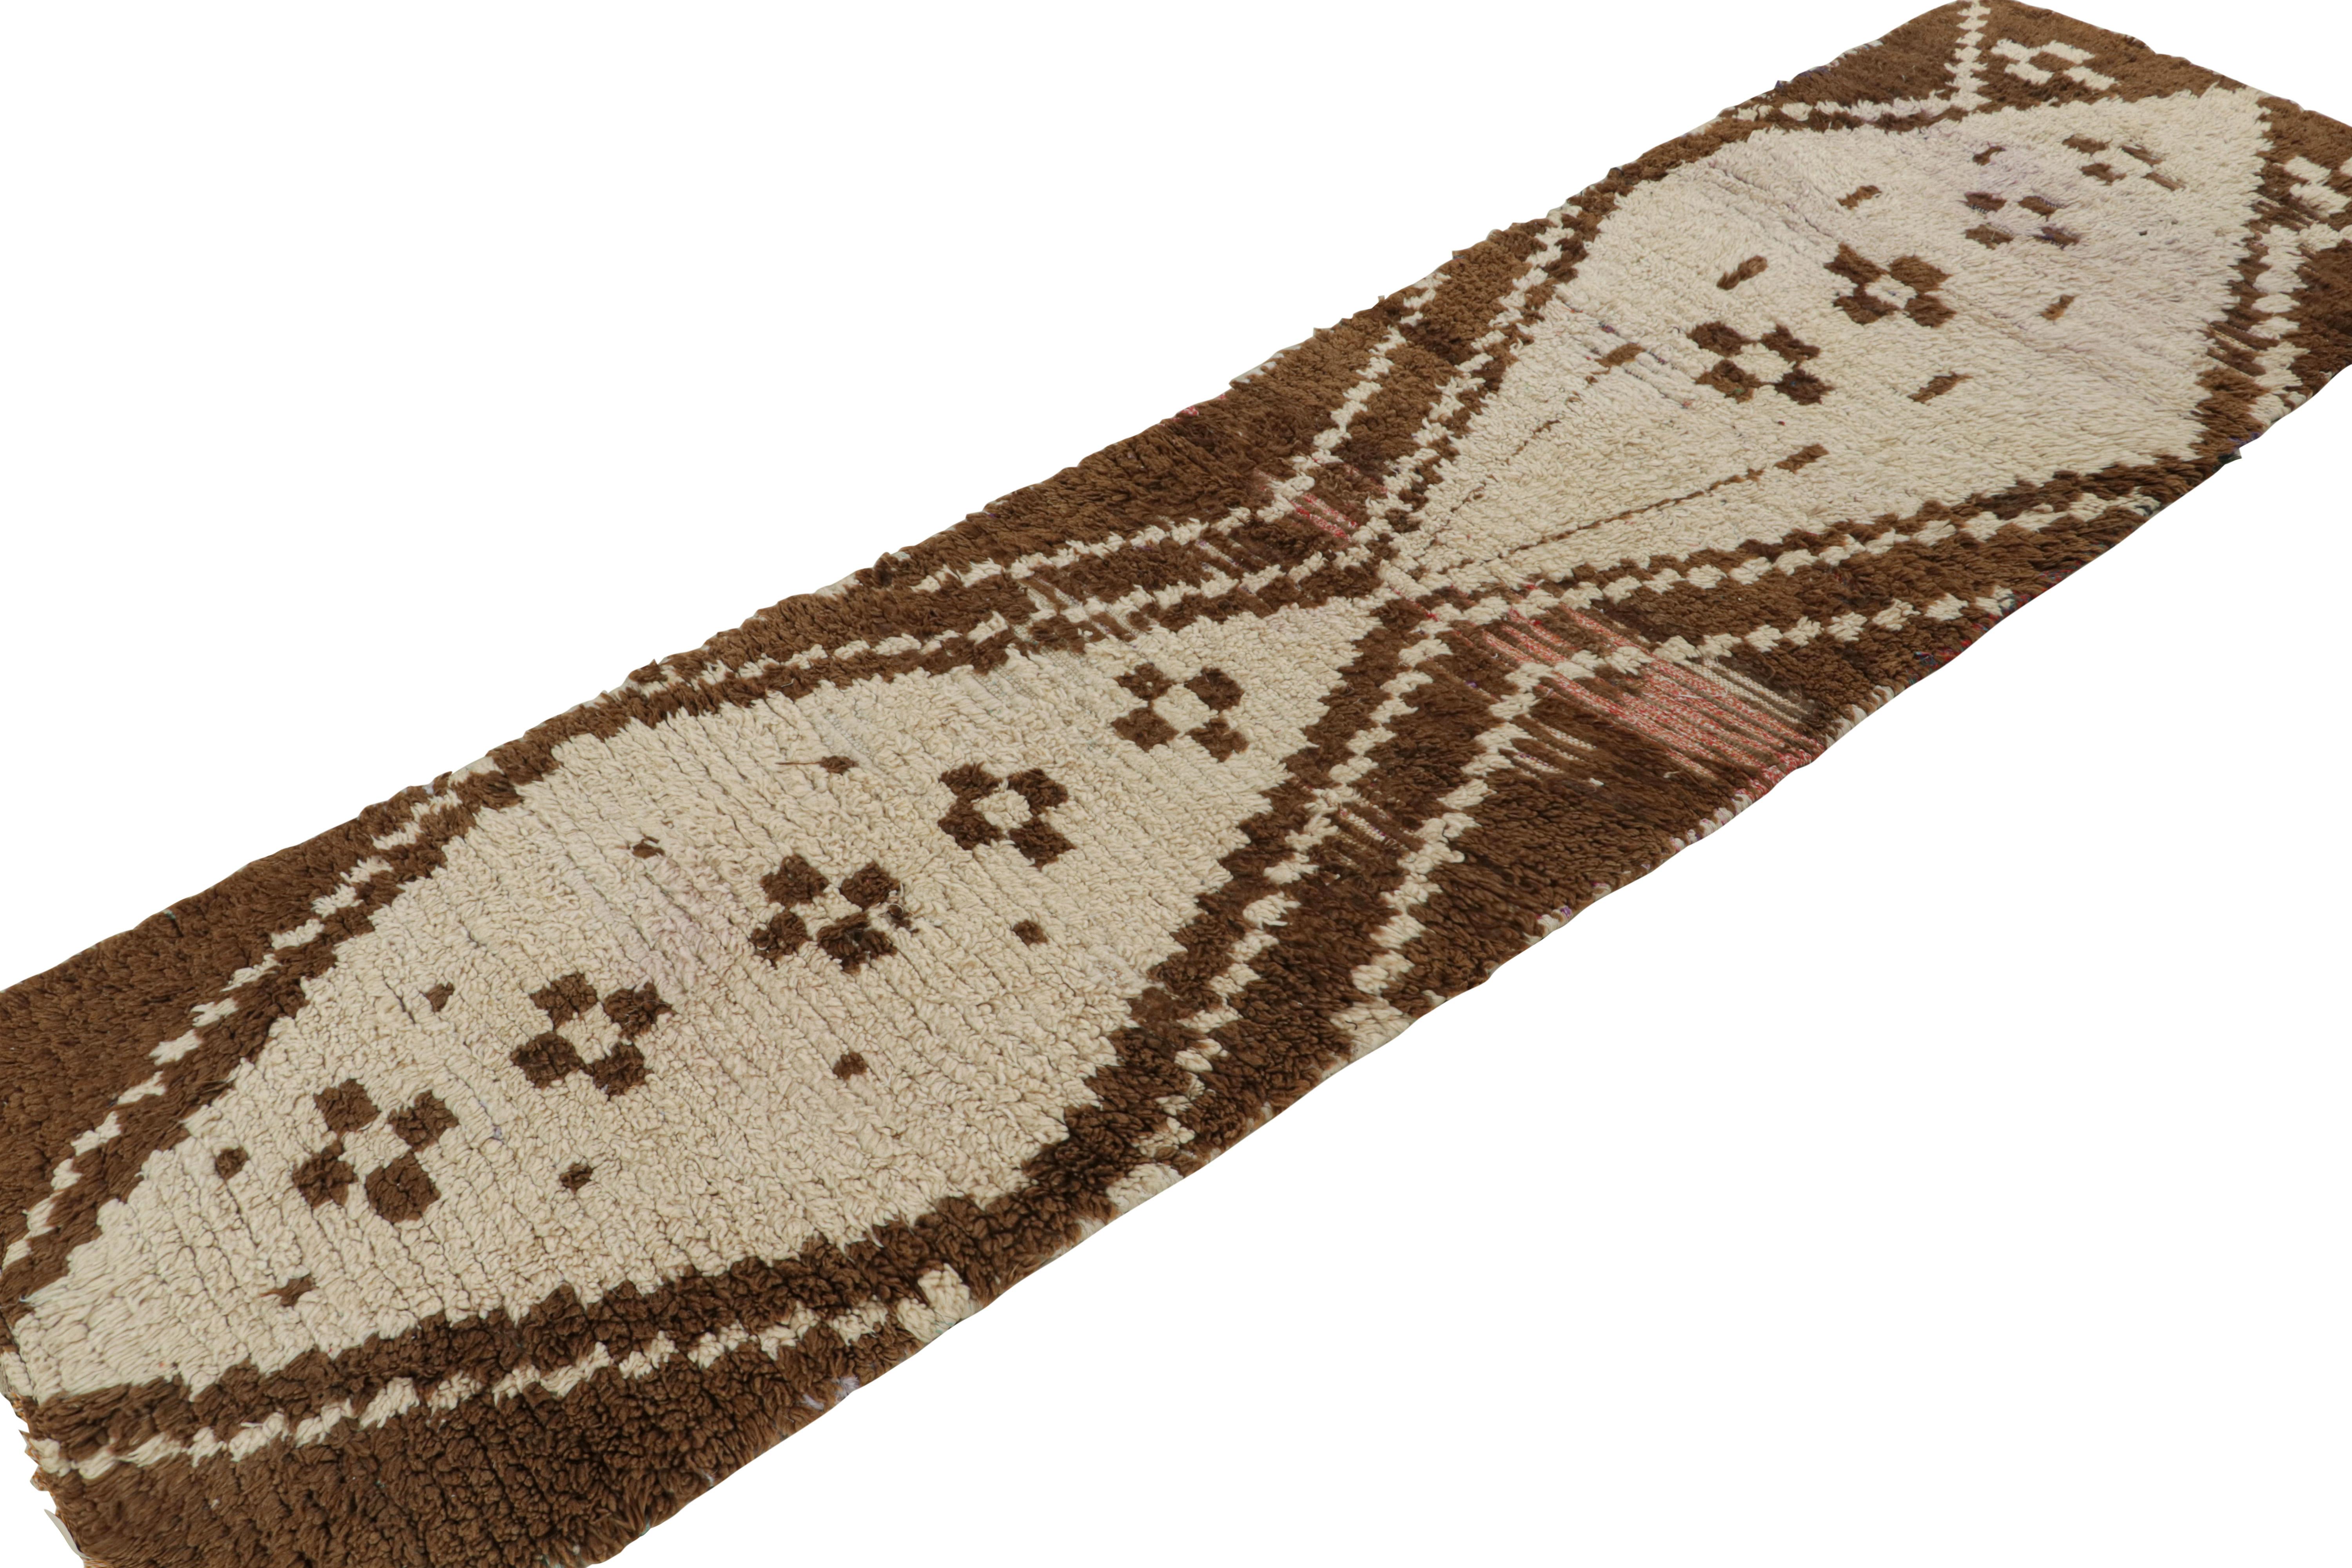 Dieser handgeknüpfte marokkanische 3x9-Läufer aus Wolle (ca. 1950-1960) stammt vermutlich vom Stamm der Azilal. 

Über das Design: 

Der Läufer ist mit beige-braunen Tribal-Mustern und dezenten roten Interpunktionen versehen. Aufmerksame Augen